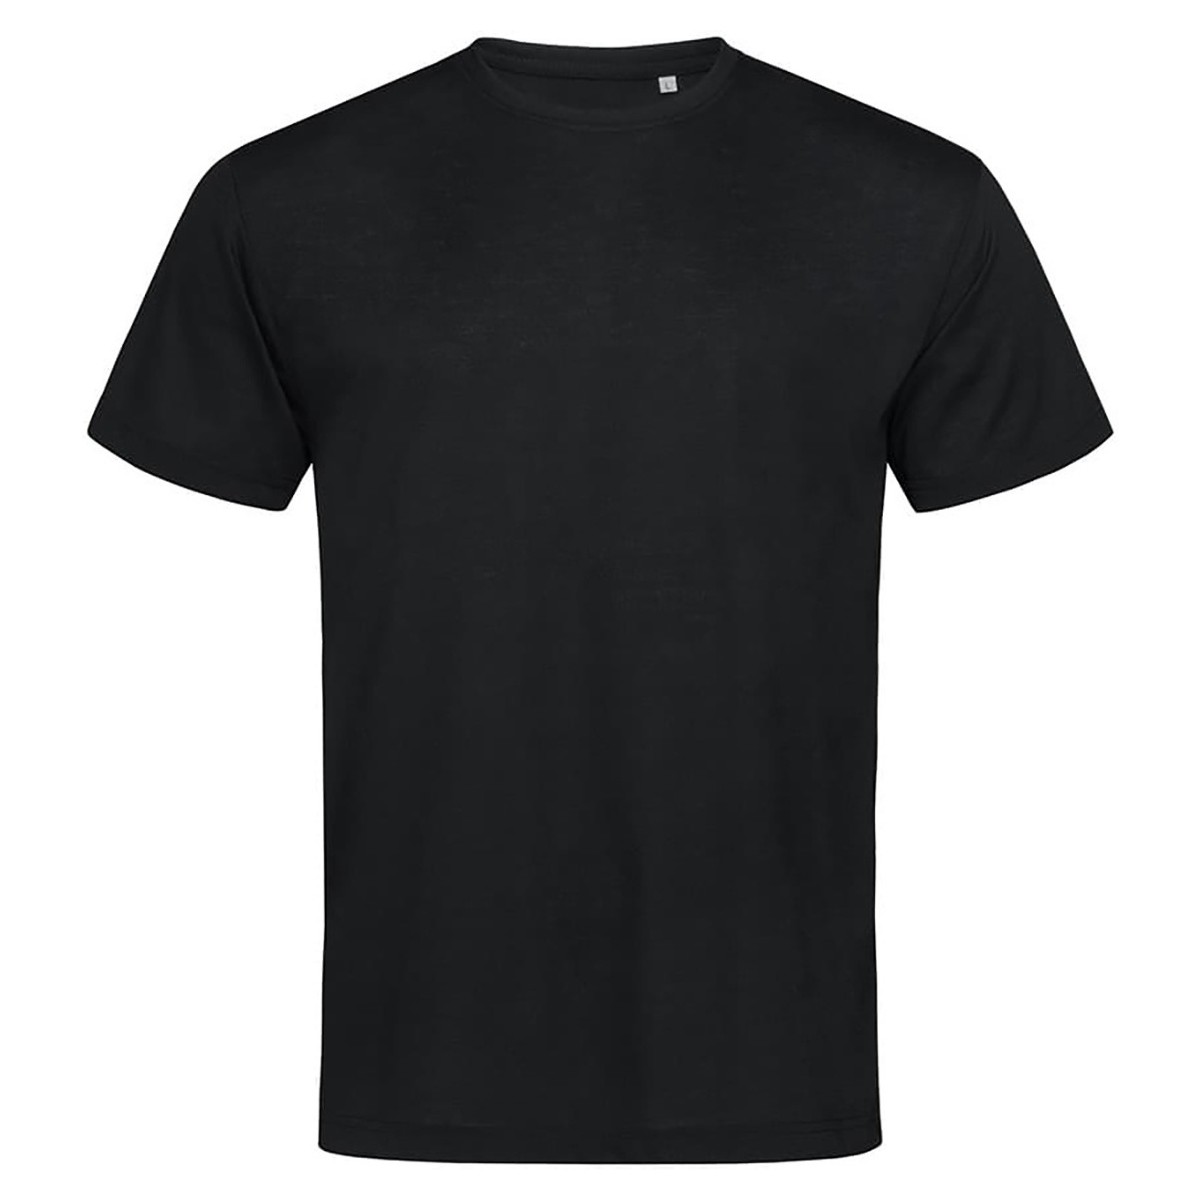 Vêtements Homme T-shirts manches longues Stedman AB350 Noir